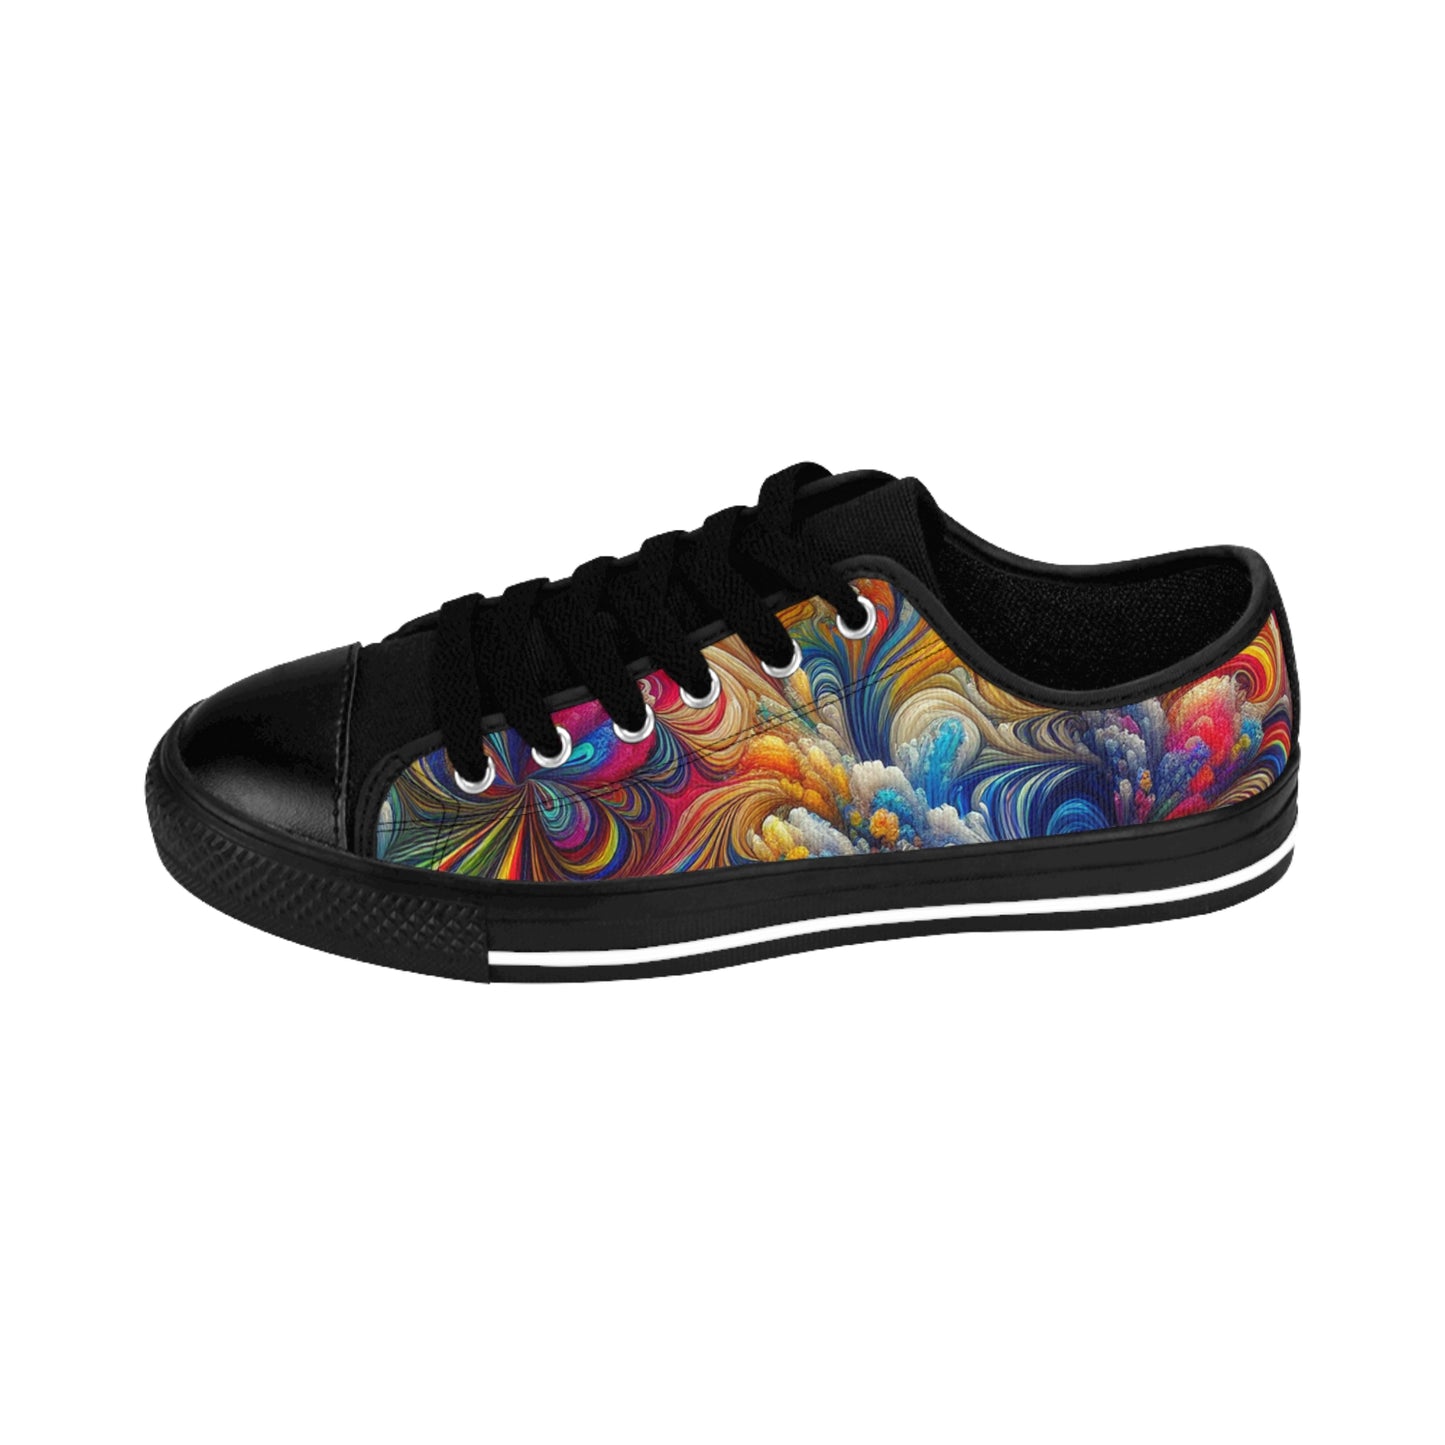 "PsycheBloom Rainbow Canvas"- LowTop Shoes